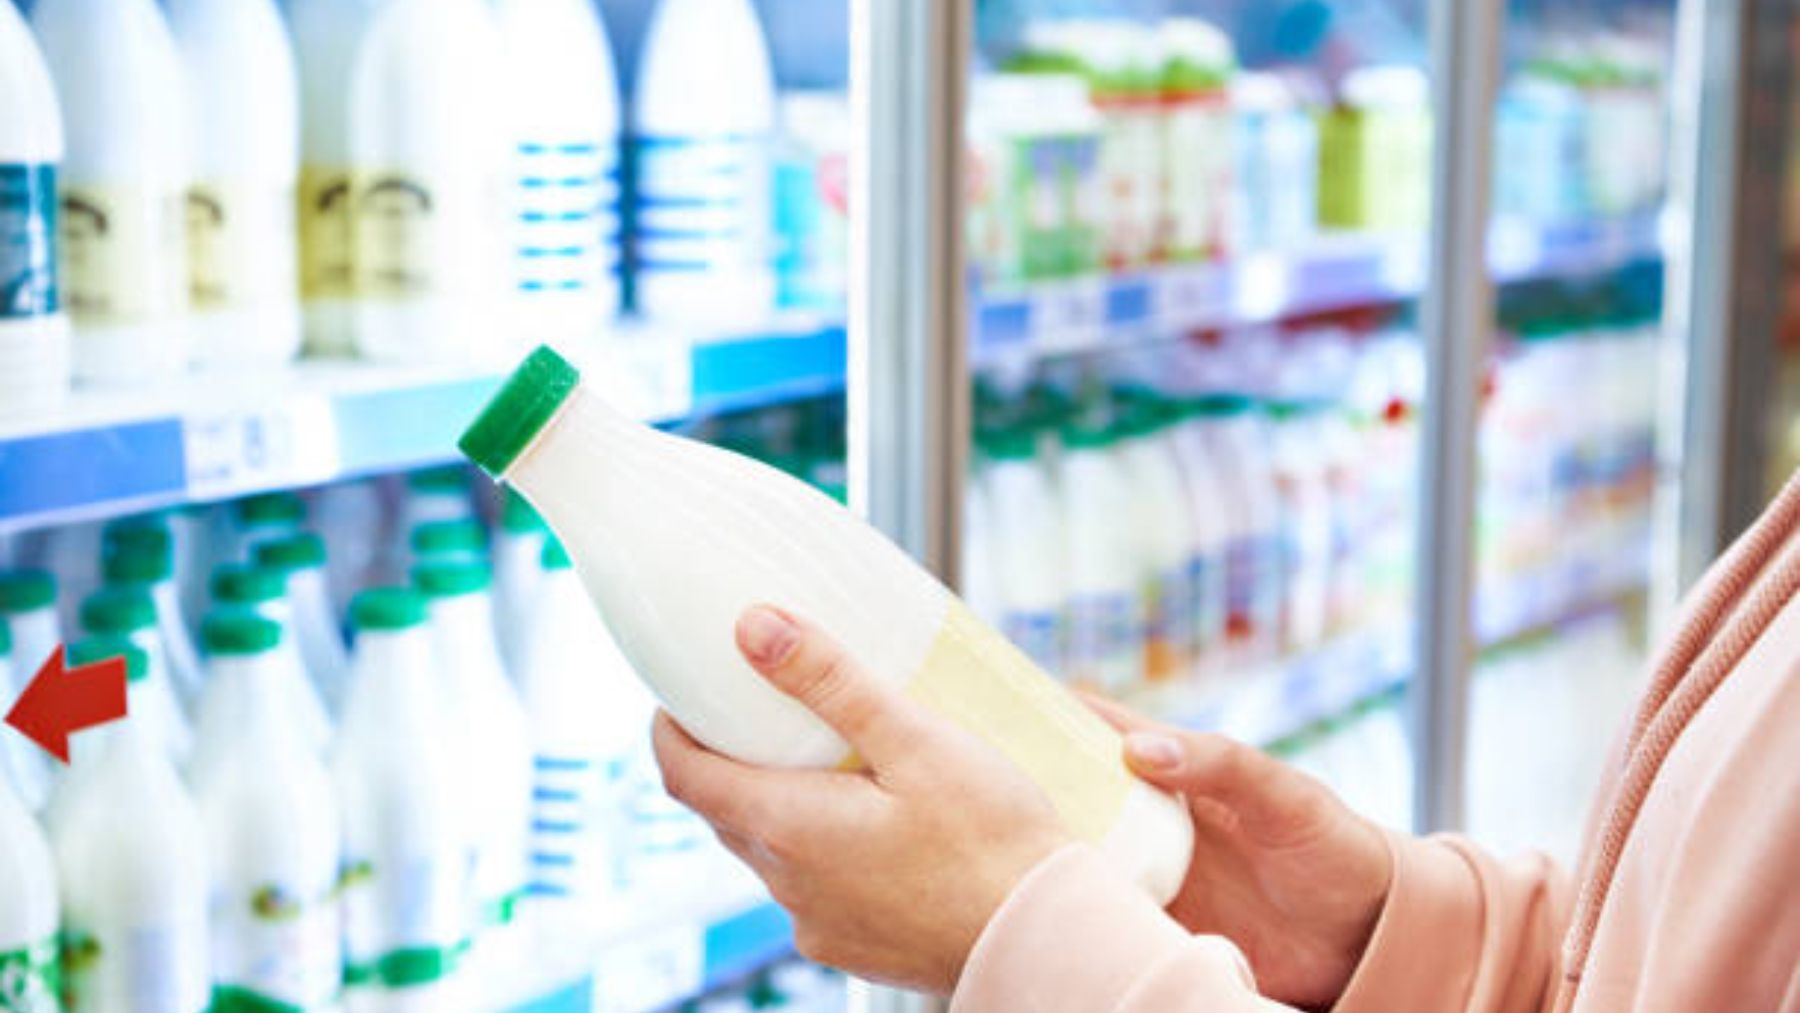 Descubre el supermercado que vende la mejor leche según la OCU